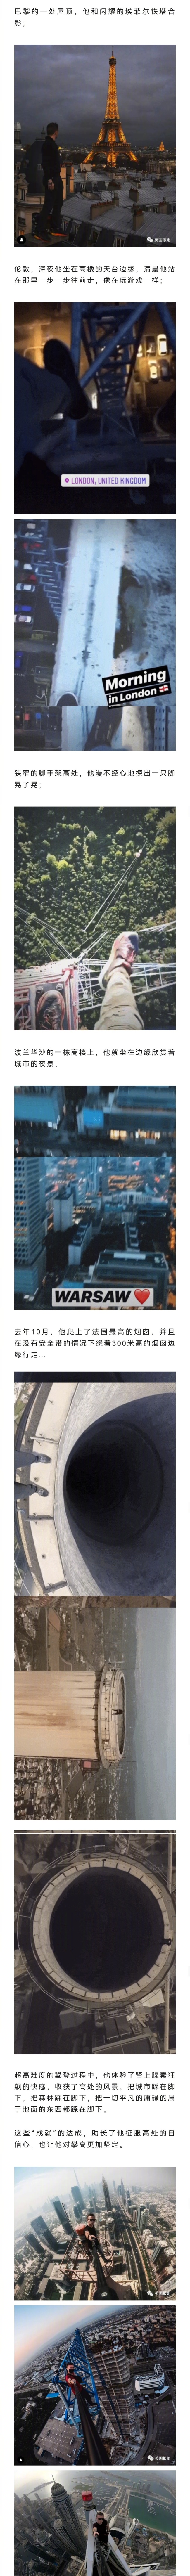 法国网红爬中国香港68楼天台后坠亡